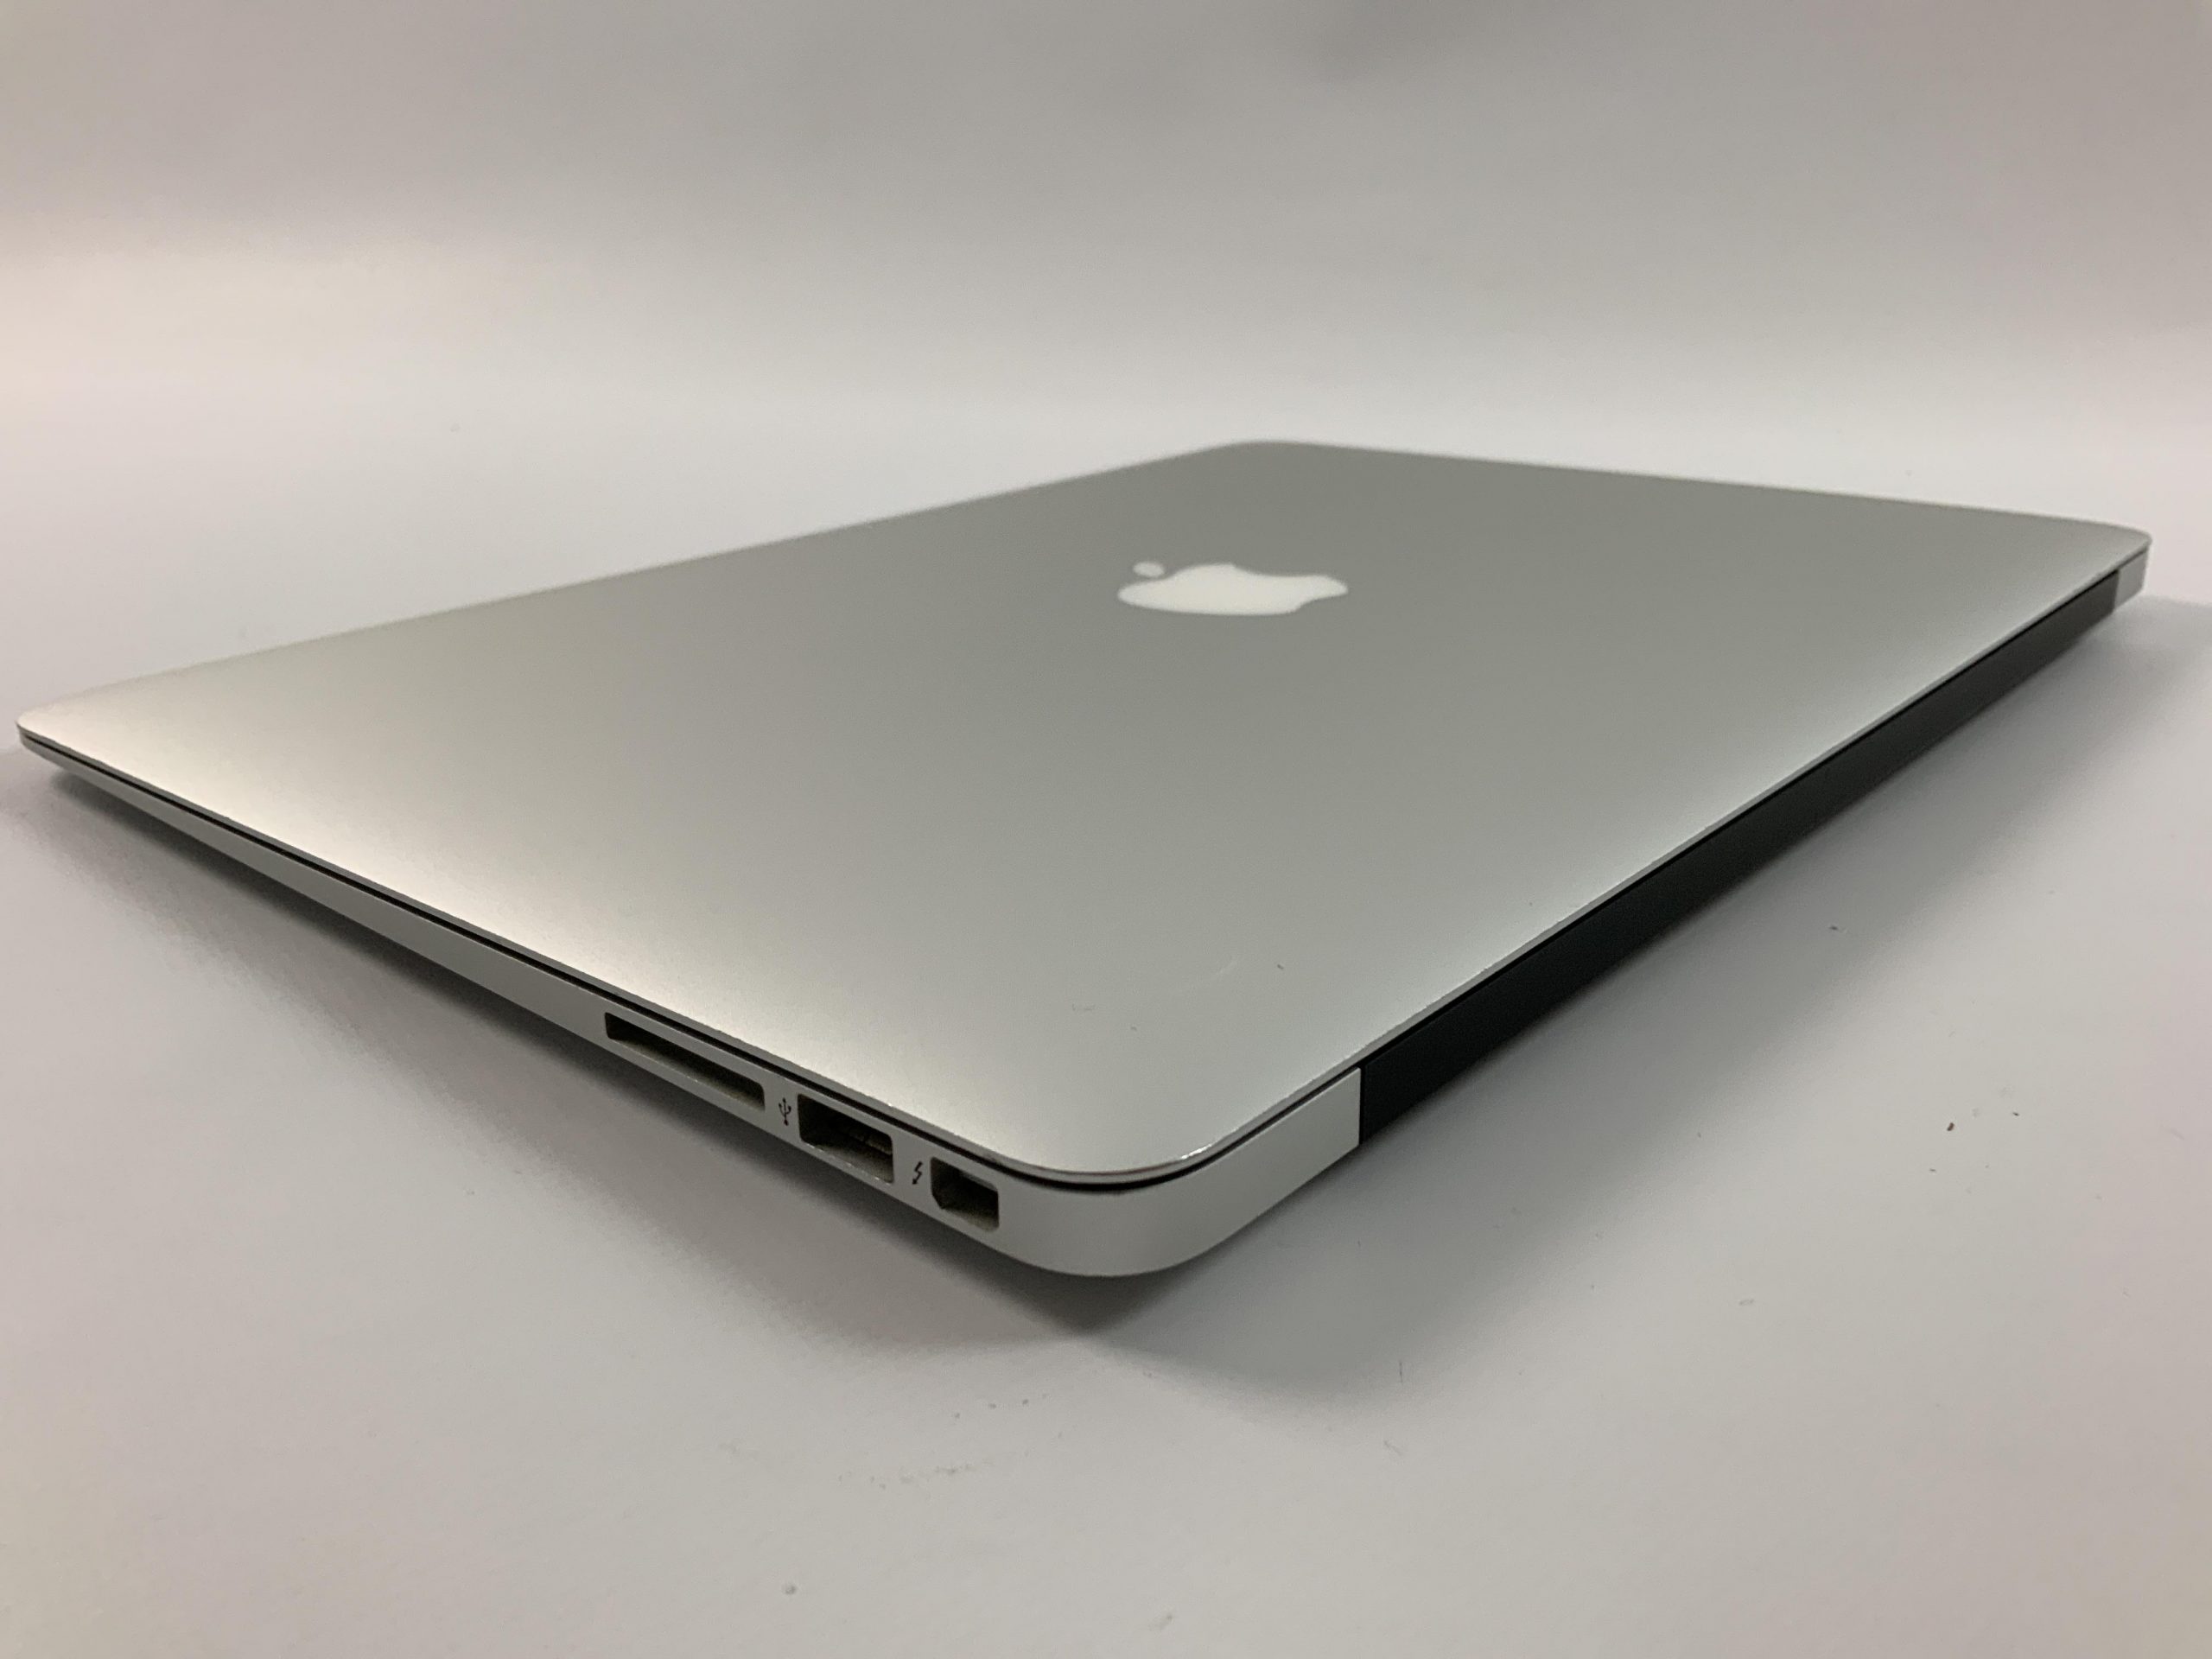 MacBook Air 13" Mid 2017 (Intel Core i5 1.8 GHz 8 GB RAM 256 GB SSD), Intel Core i5 1.8 GHz, 8 GB RAM, 256 GB SSD, imagen 3